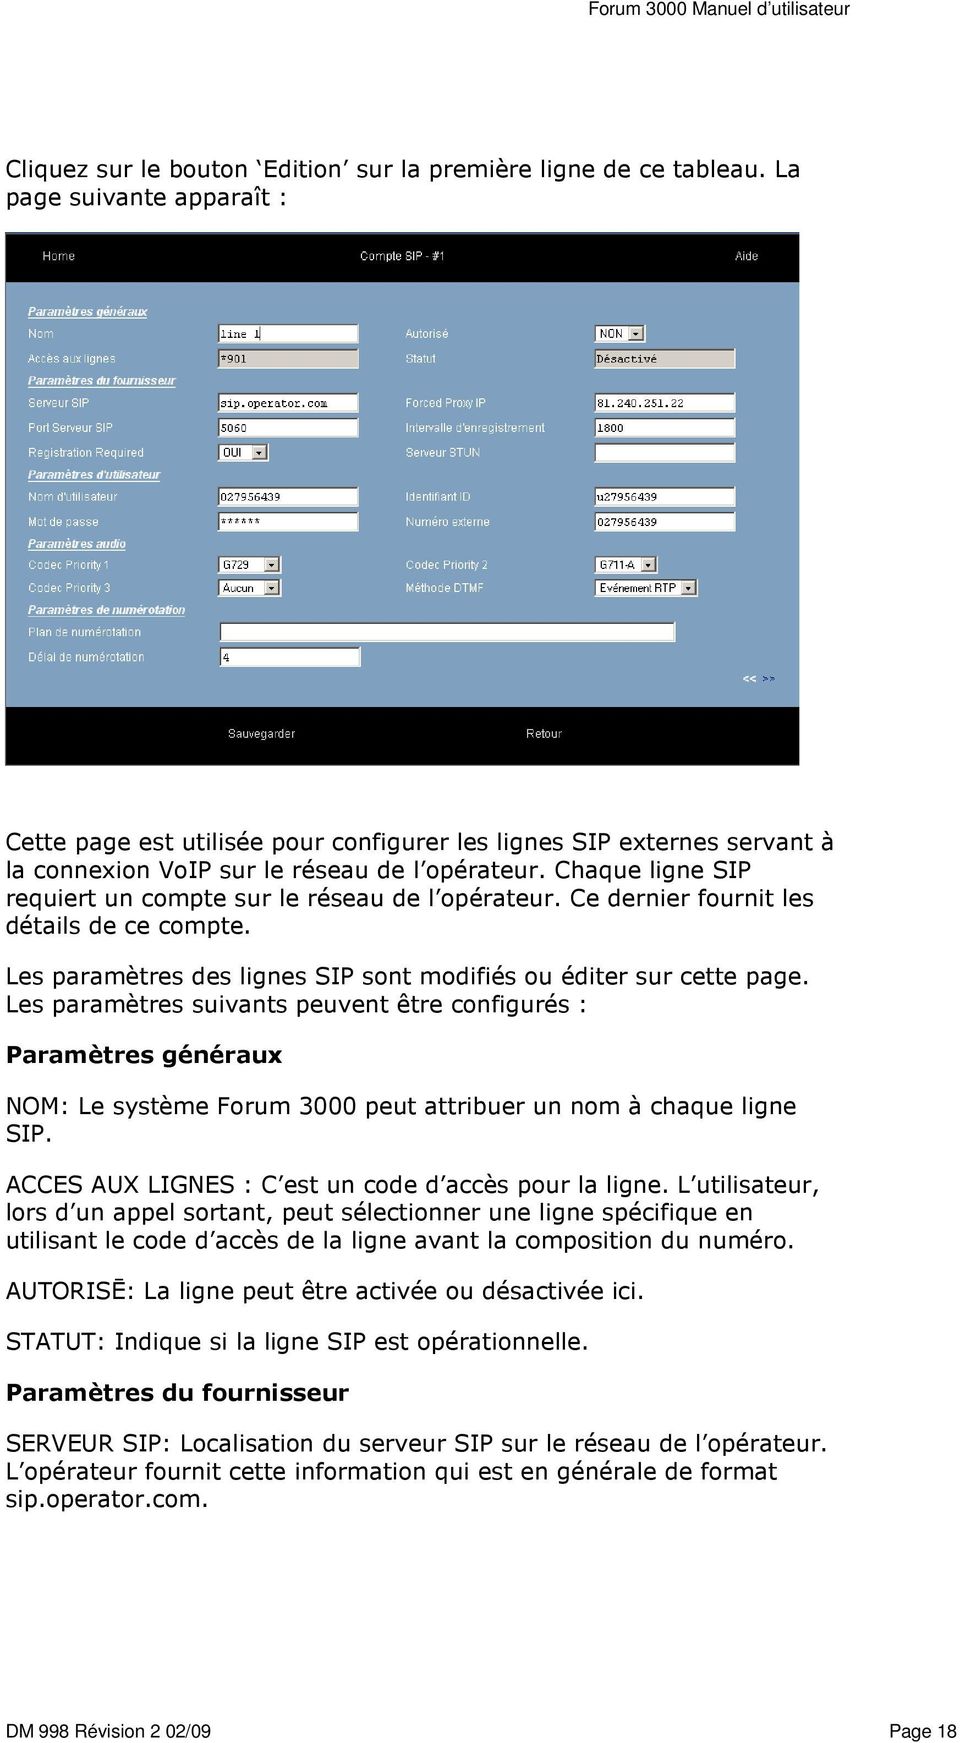 Chaque ligne SIP requiert un compte sur le réseau de l opérateur. Ce dernier fournit les détails de ce compte. Les paramètres des lignes SIP sont modifiés ou éditer sur cette page.